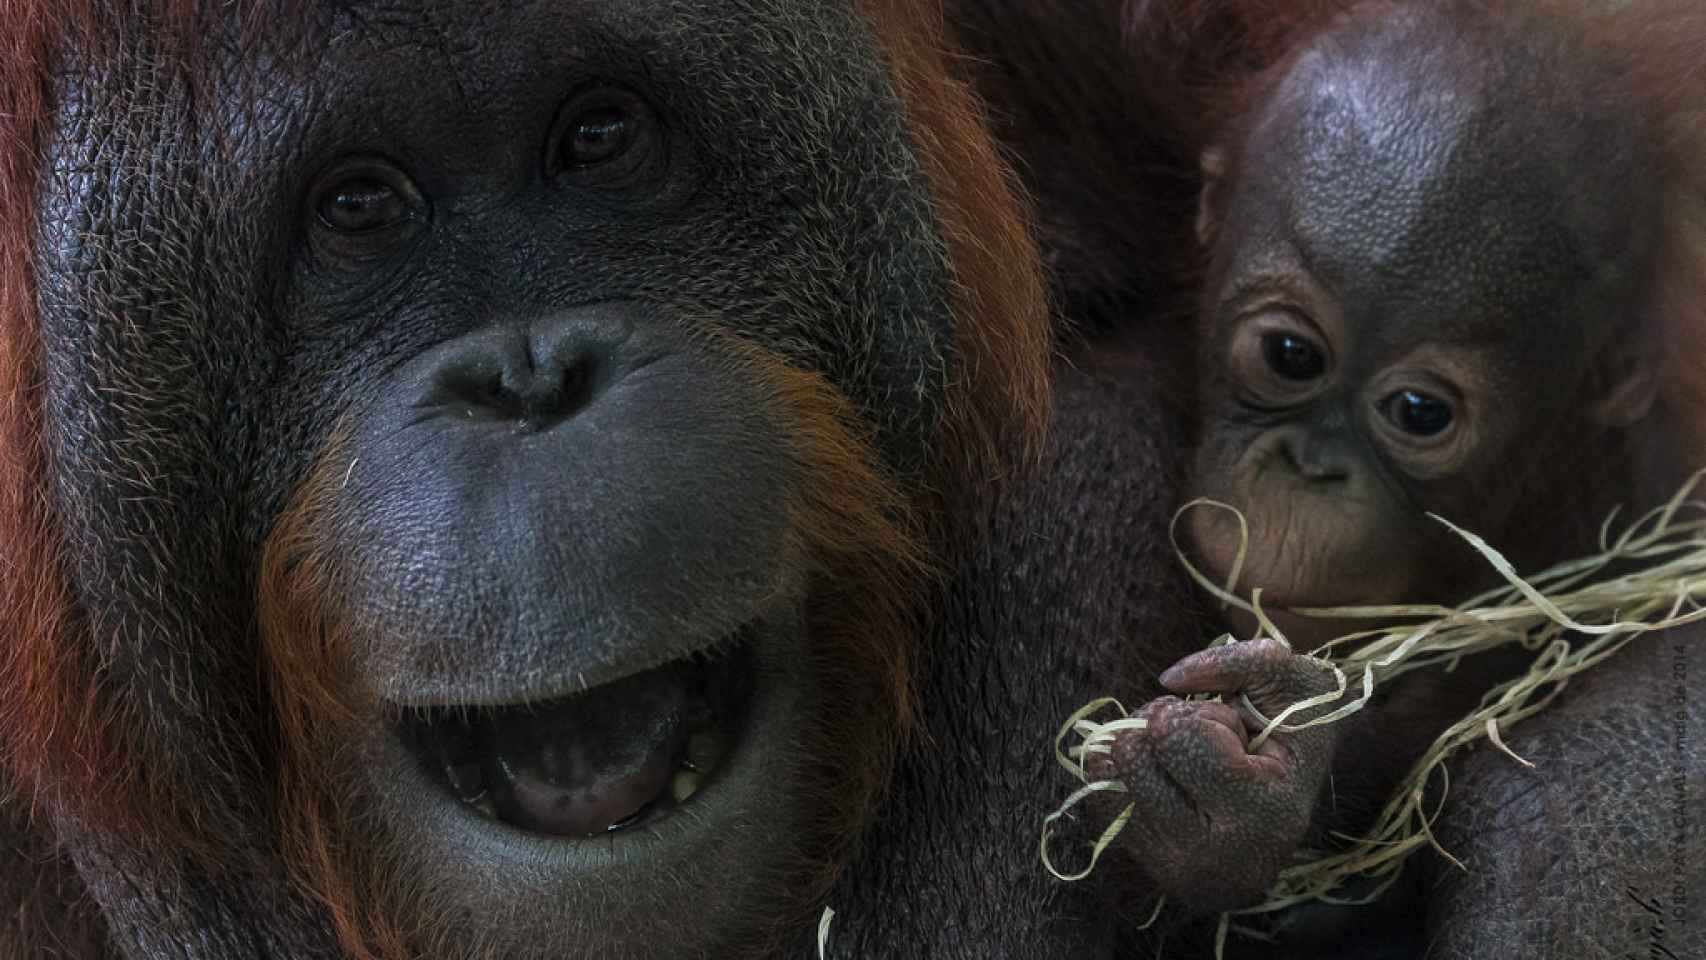 La cría de orangután depende por completo de su madre hasta los tres años